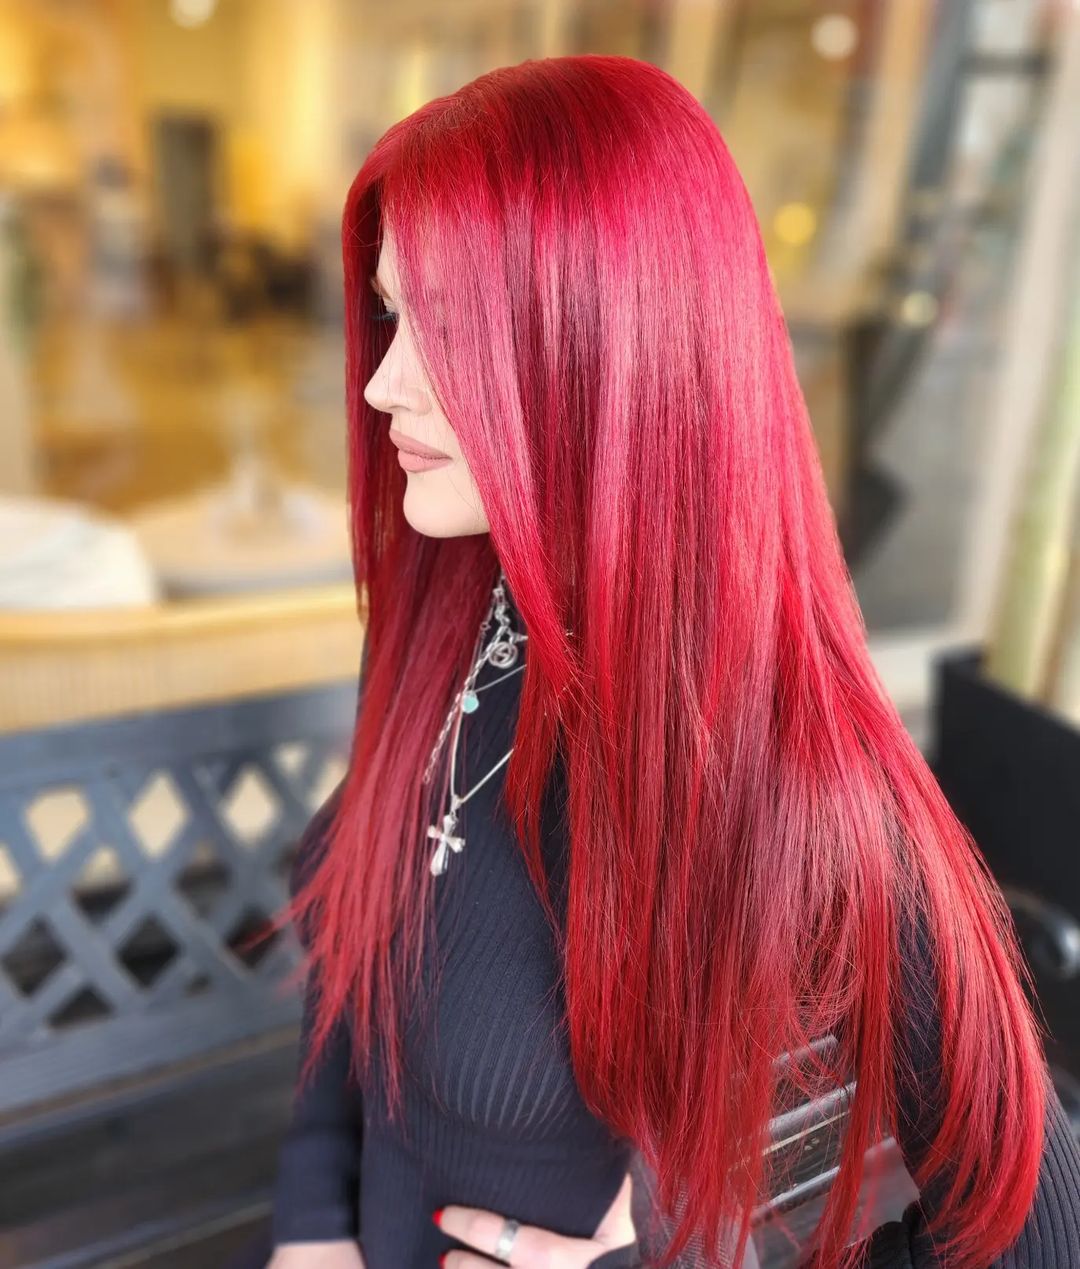 capelli rossi e lucenti